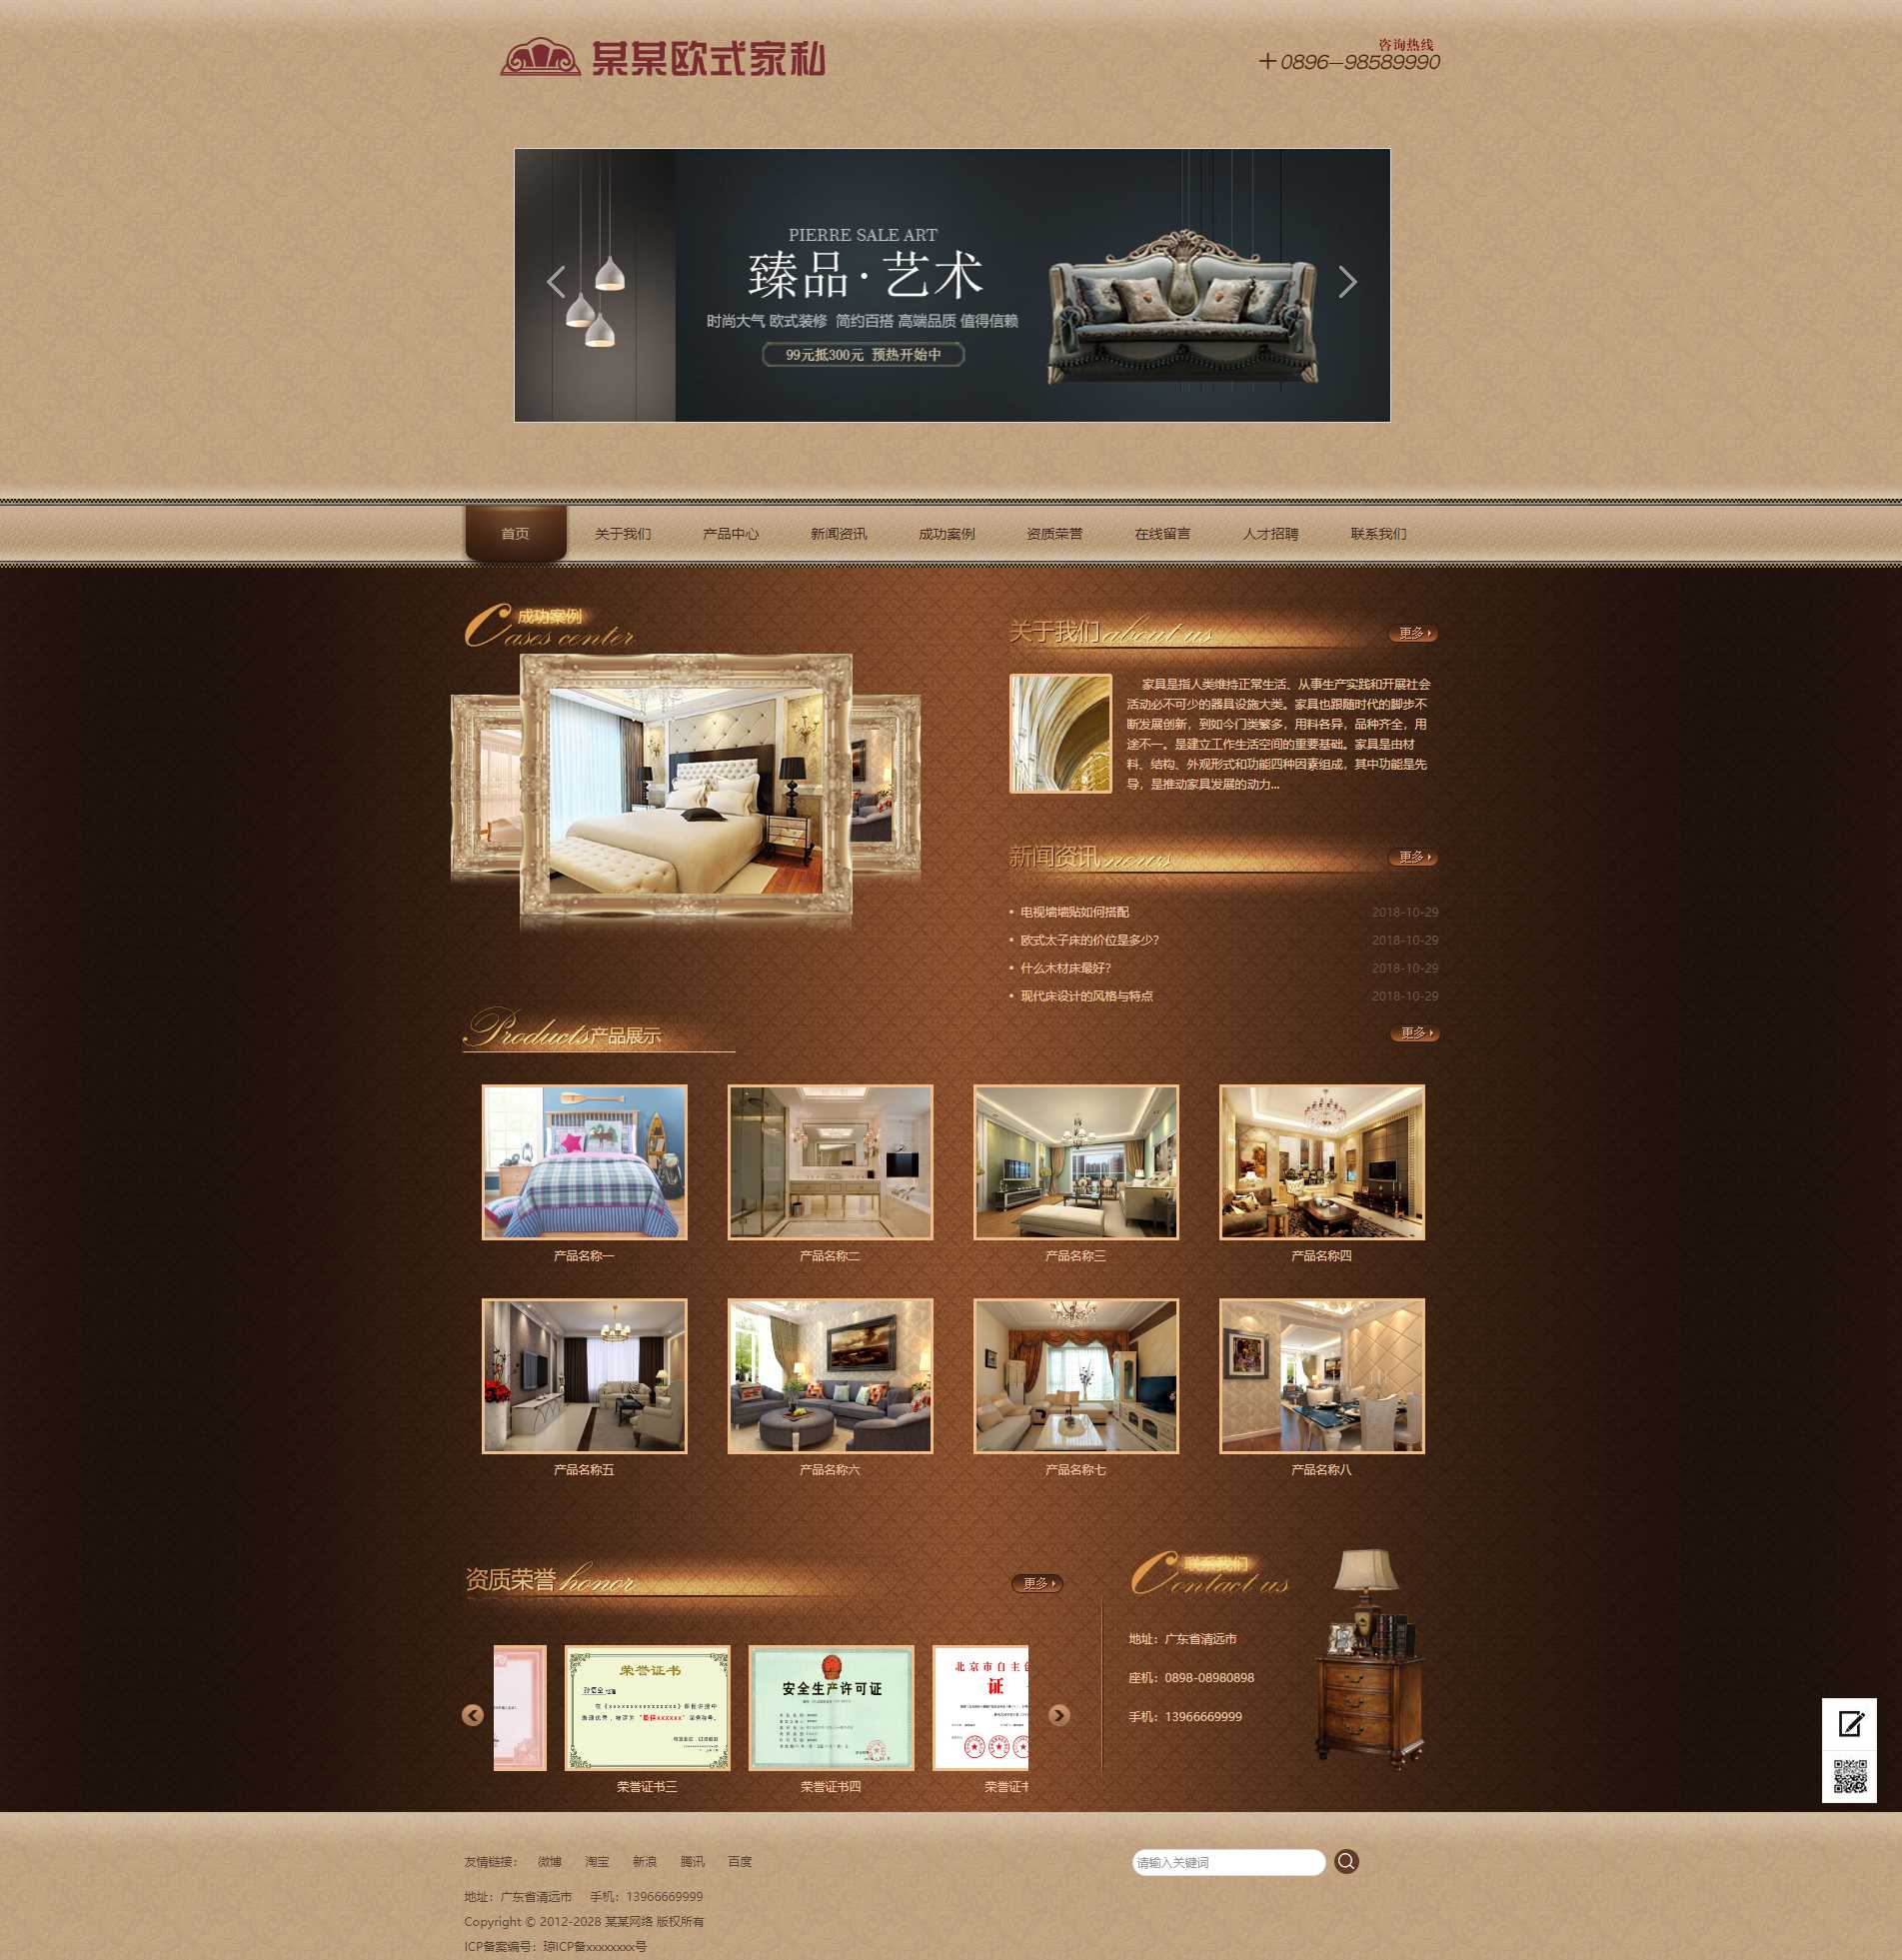 家具企业-古典欧式风格网站模版源代码-下载群